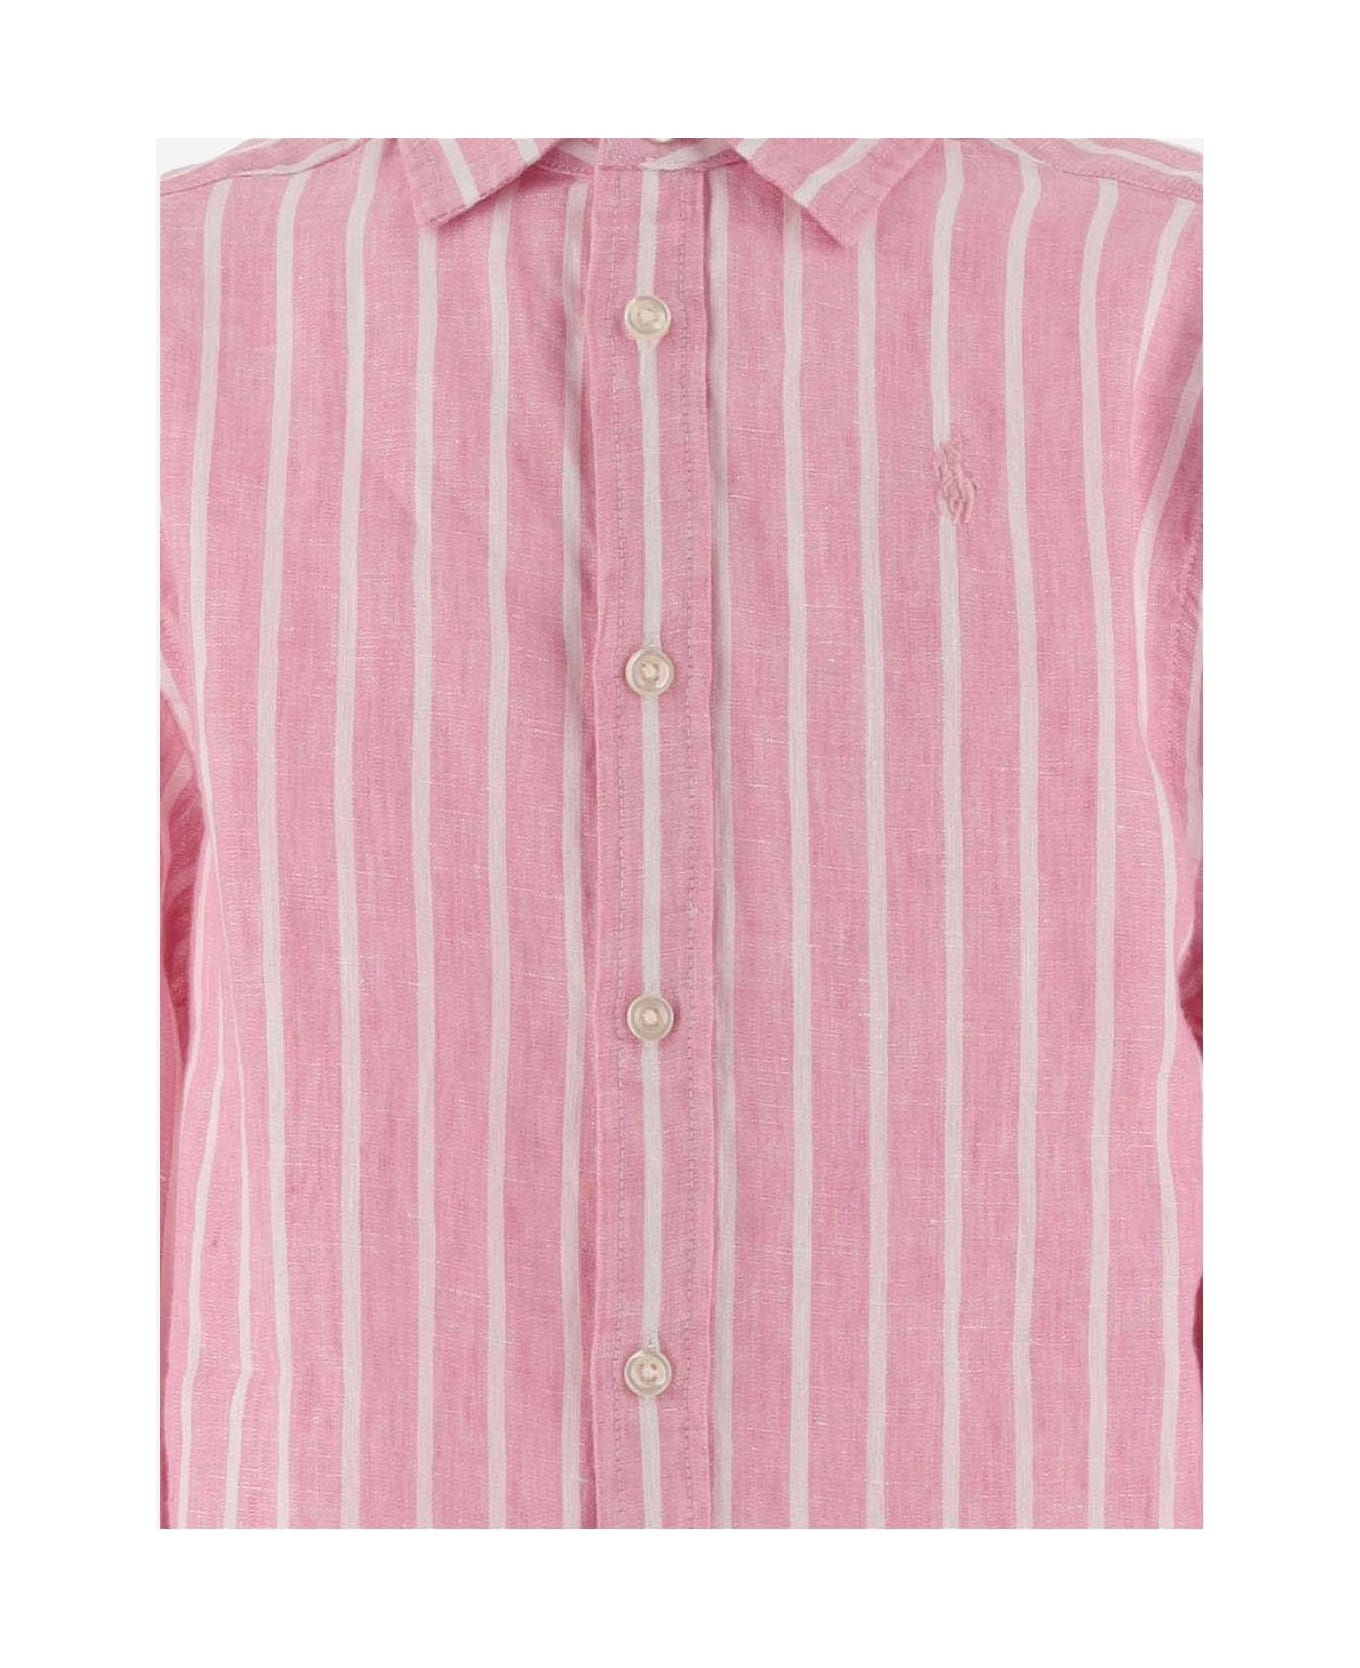 Polo Ralph Lauren Linen Striped Shirt With Logo - Pink シャツ